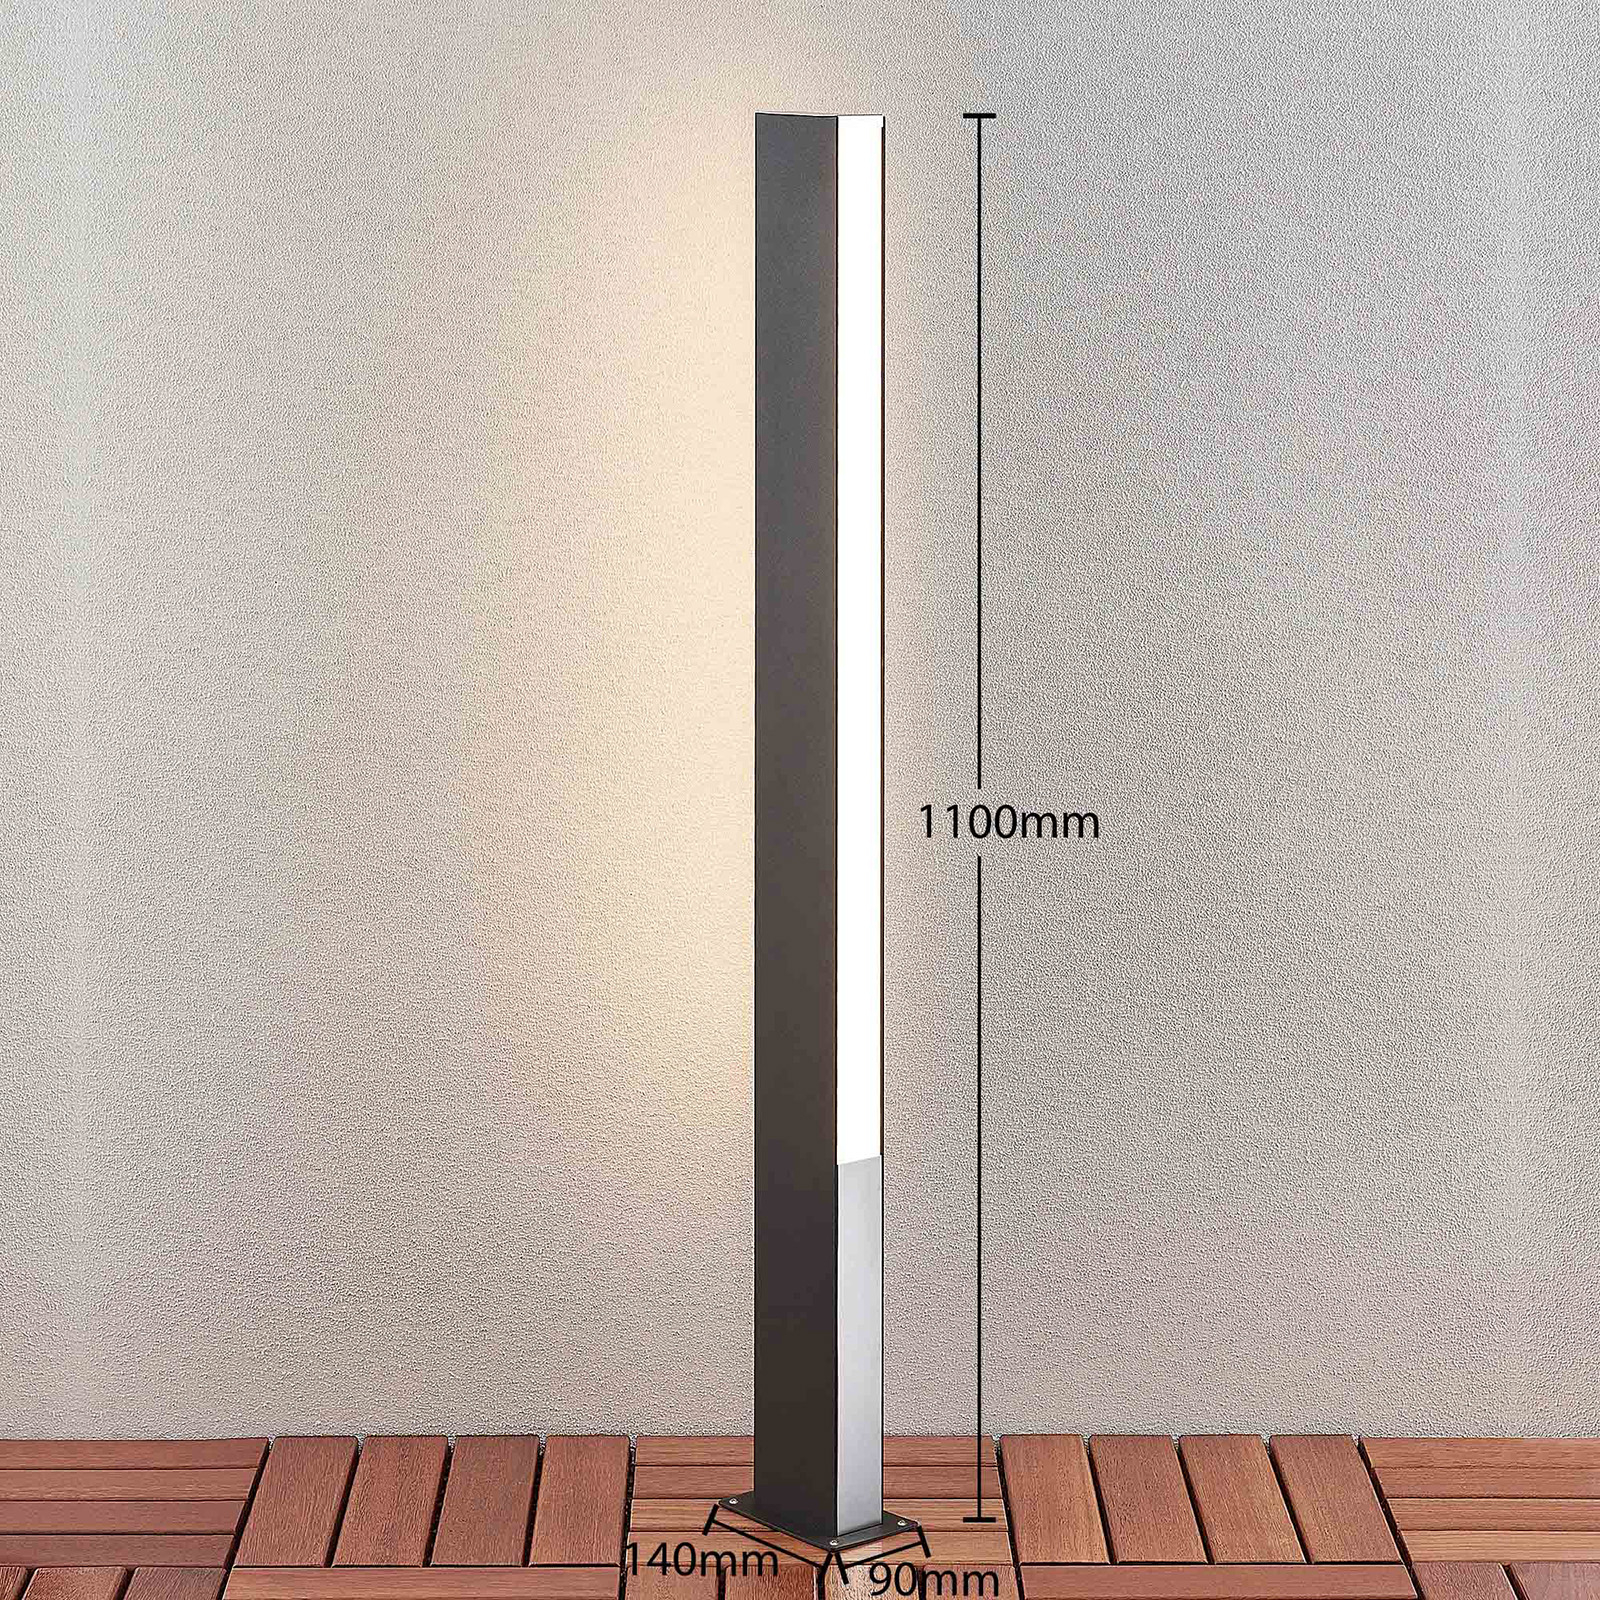 Lucande Aegisa LED venkovní svítidlo, 110 cm